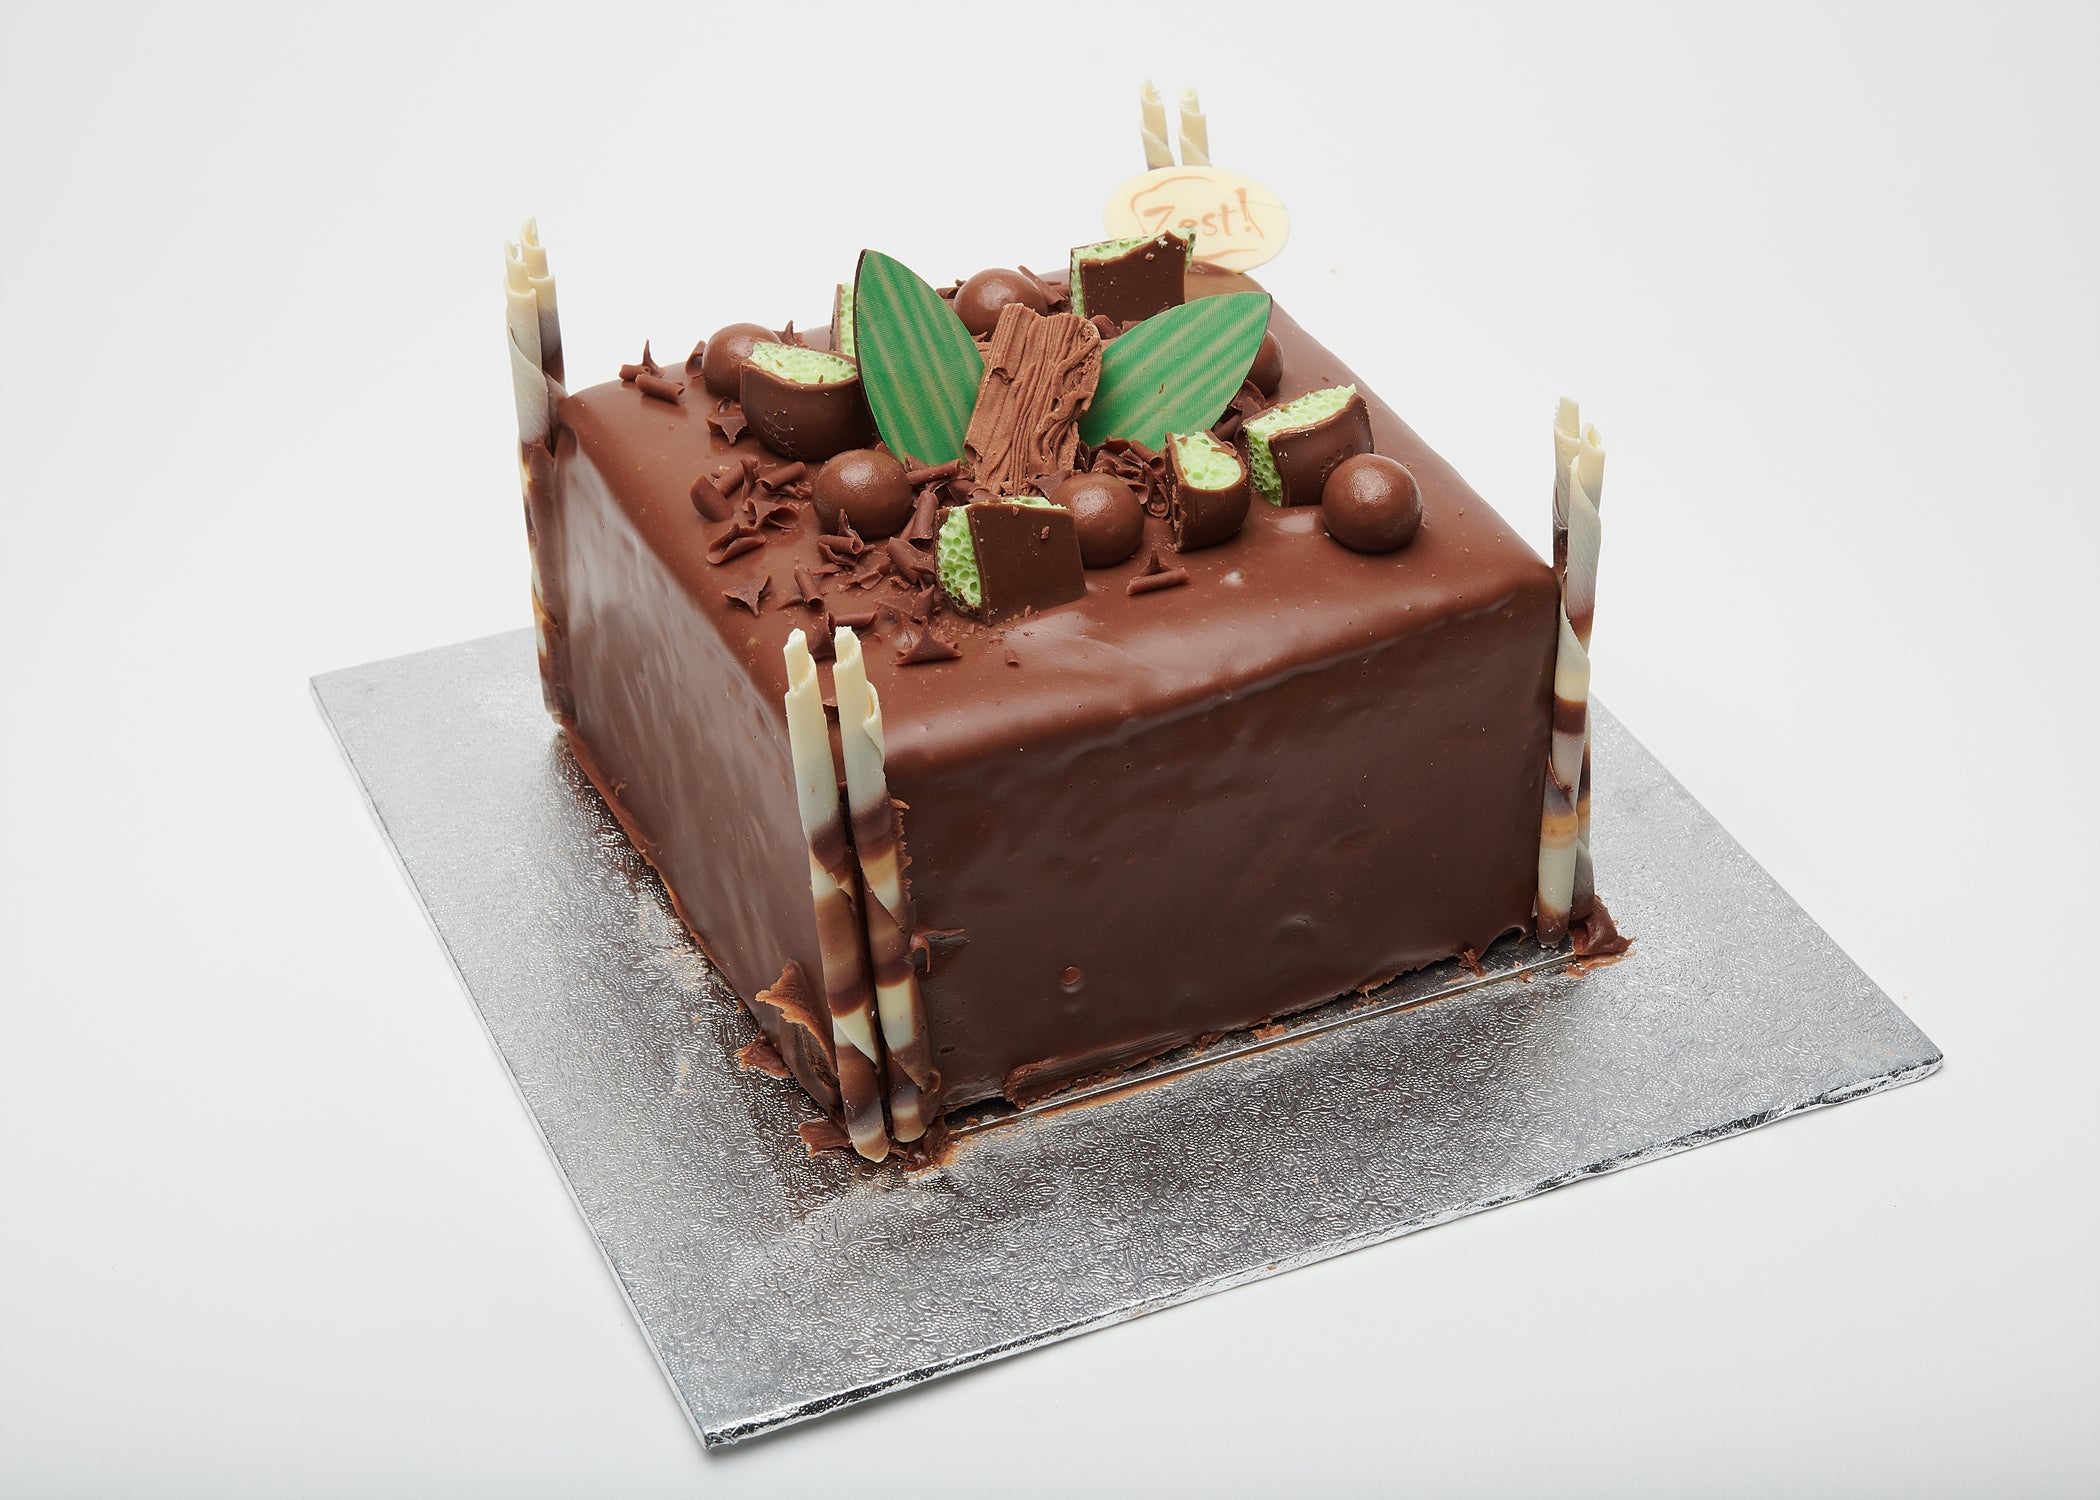 Sue's Gooey Chocolate cake... - Sue Cakes - Surangie Dias | Facebook